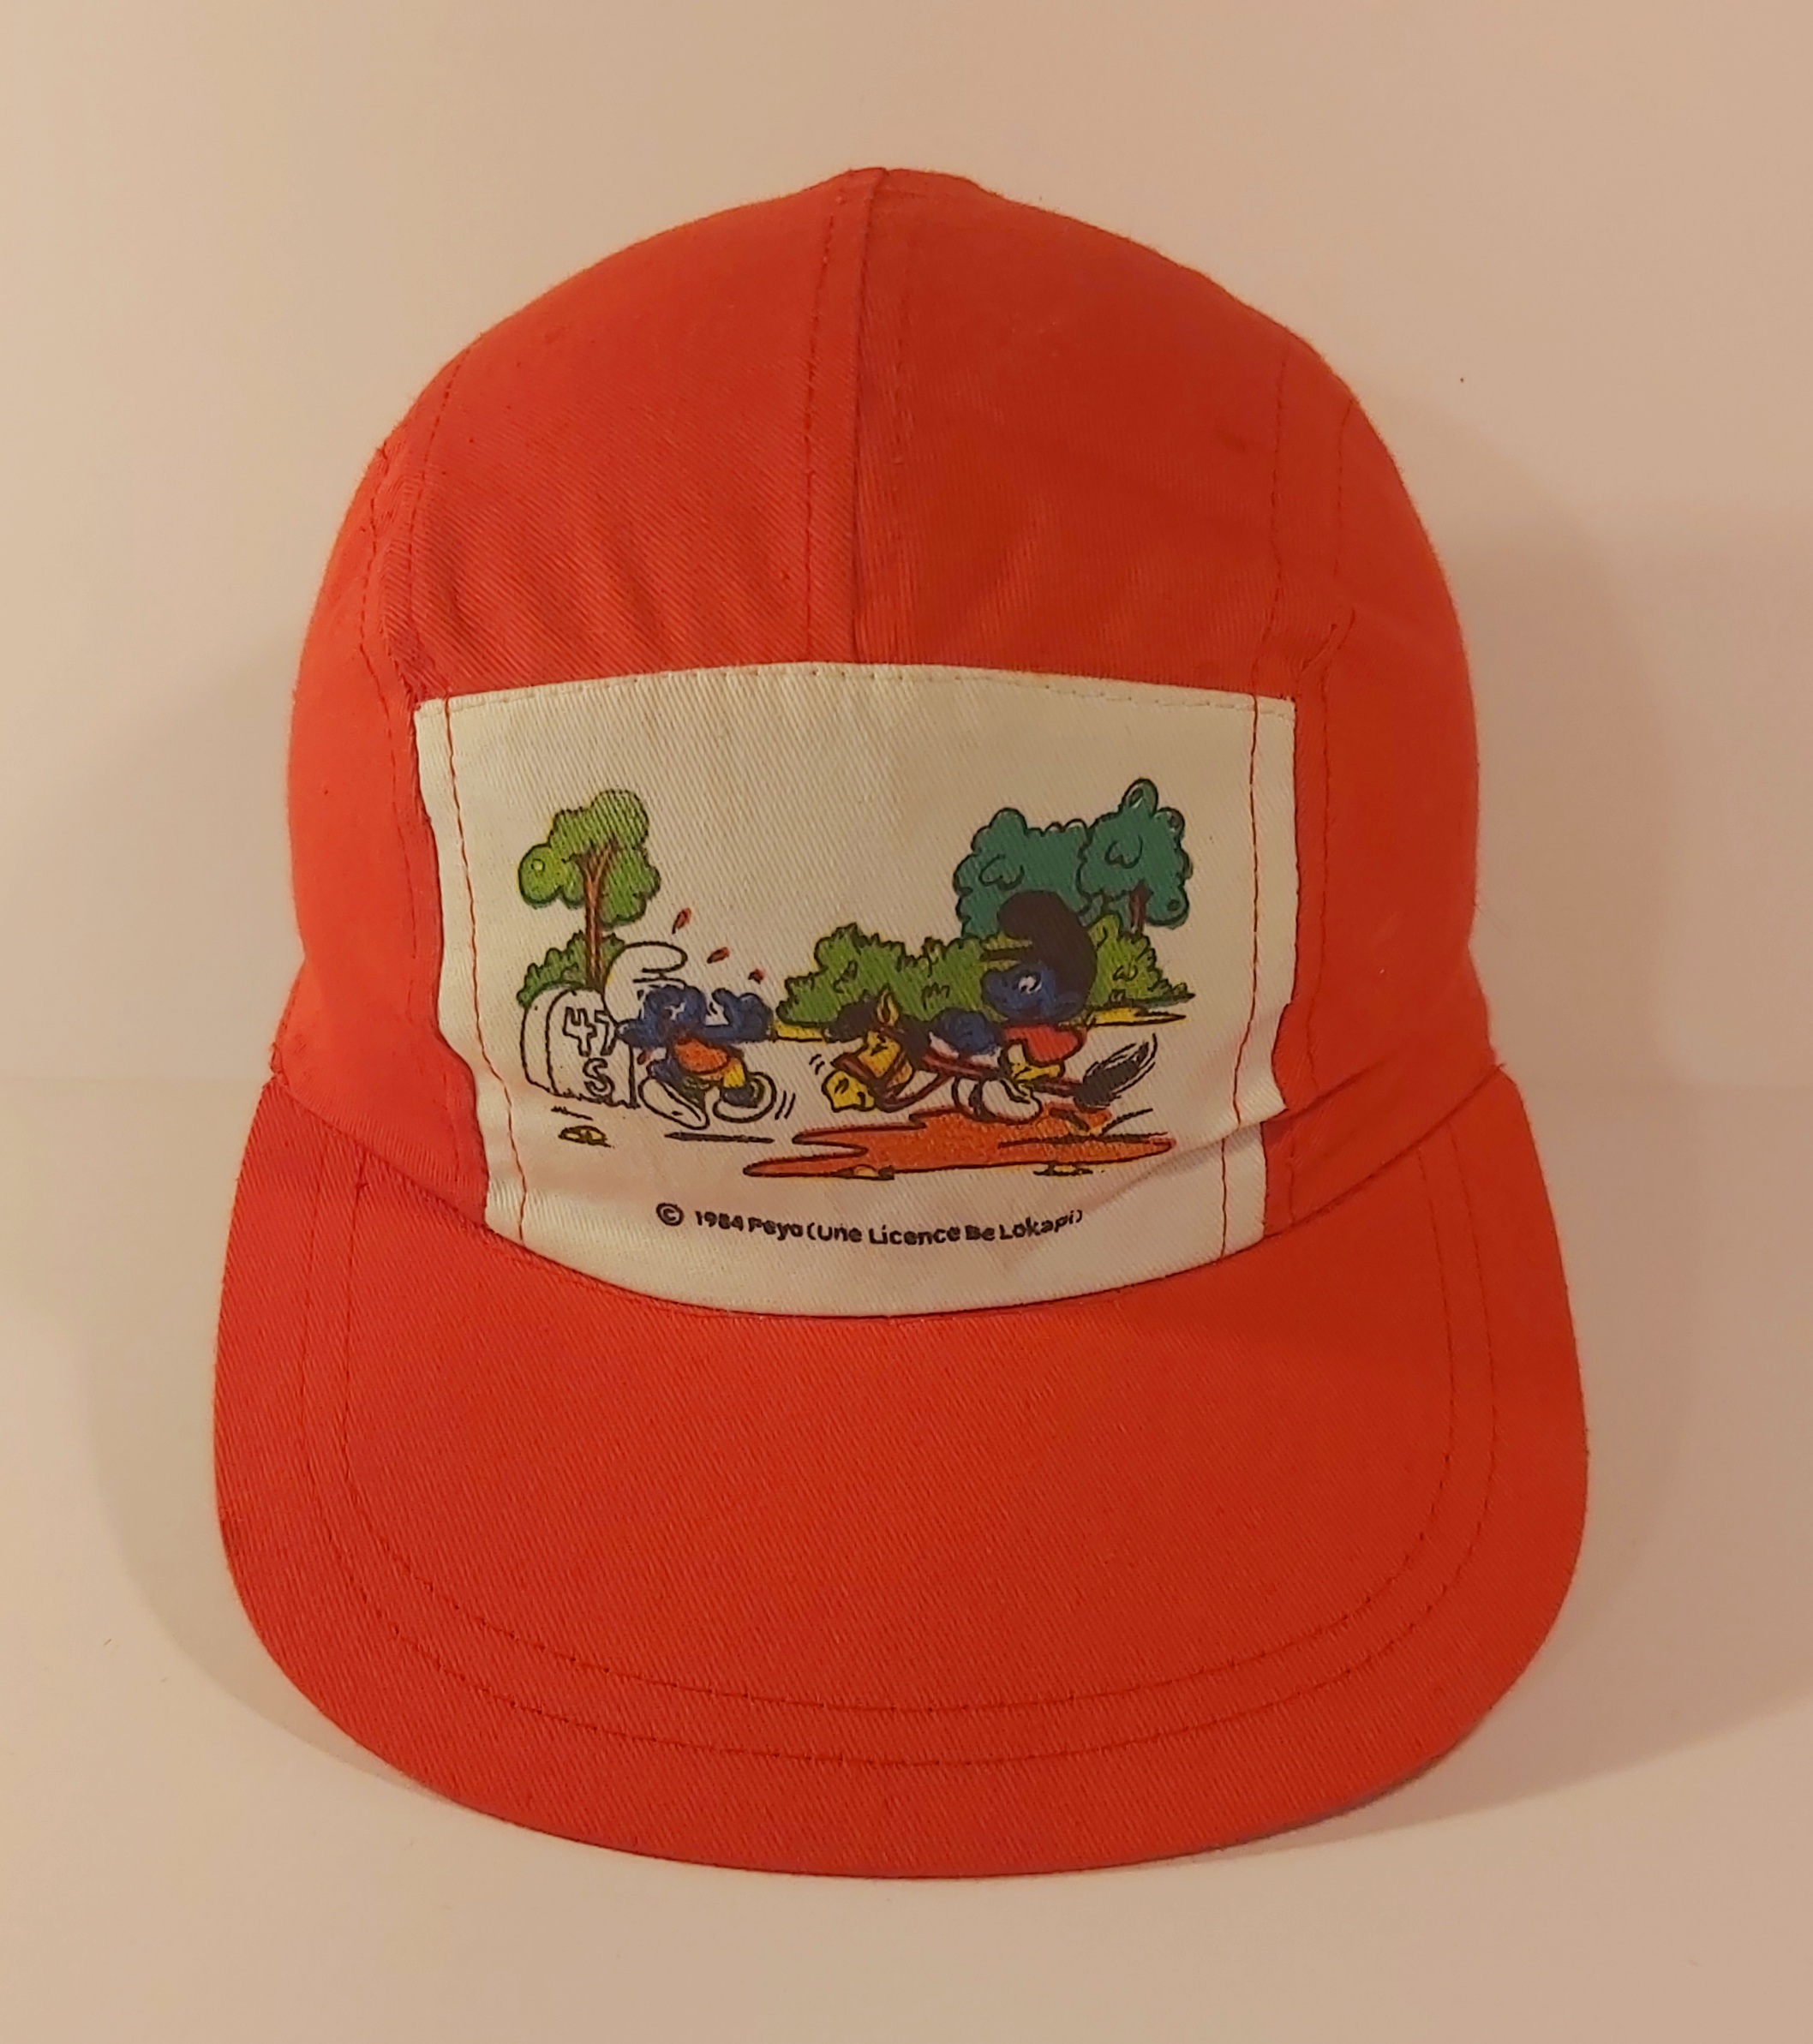 Schtroumpfs casquette de 1984